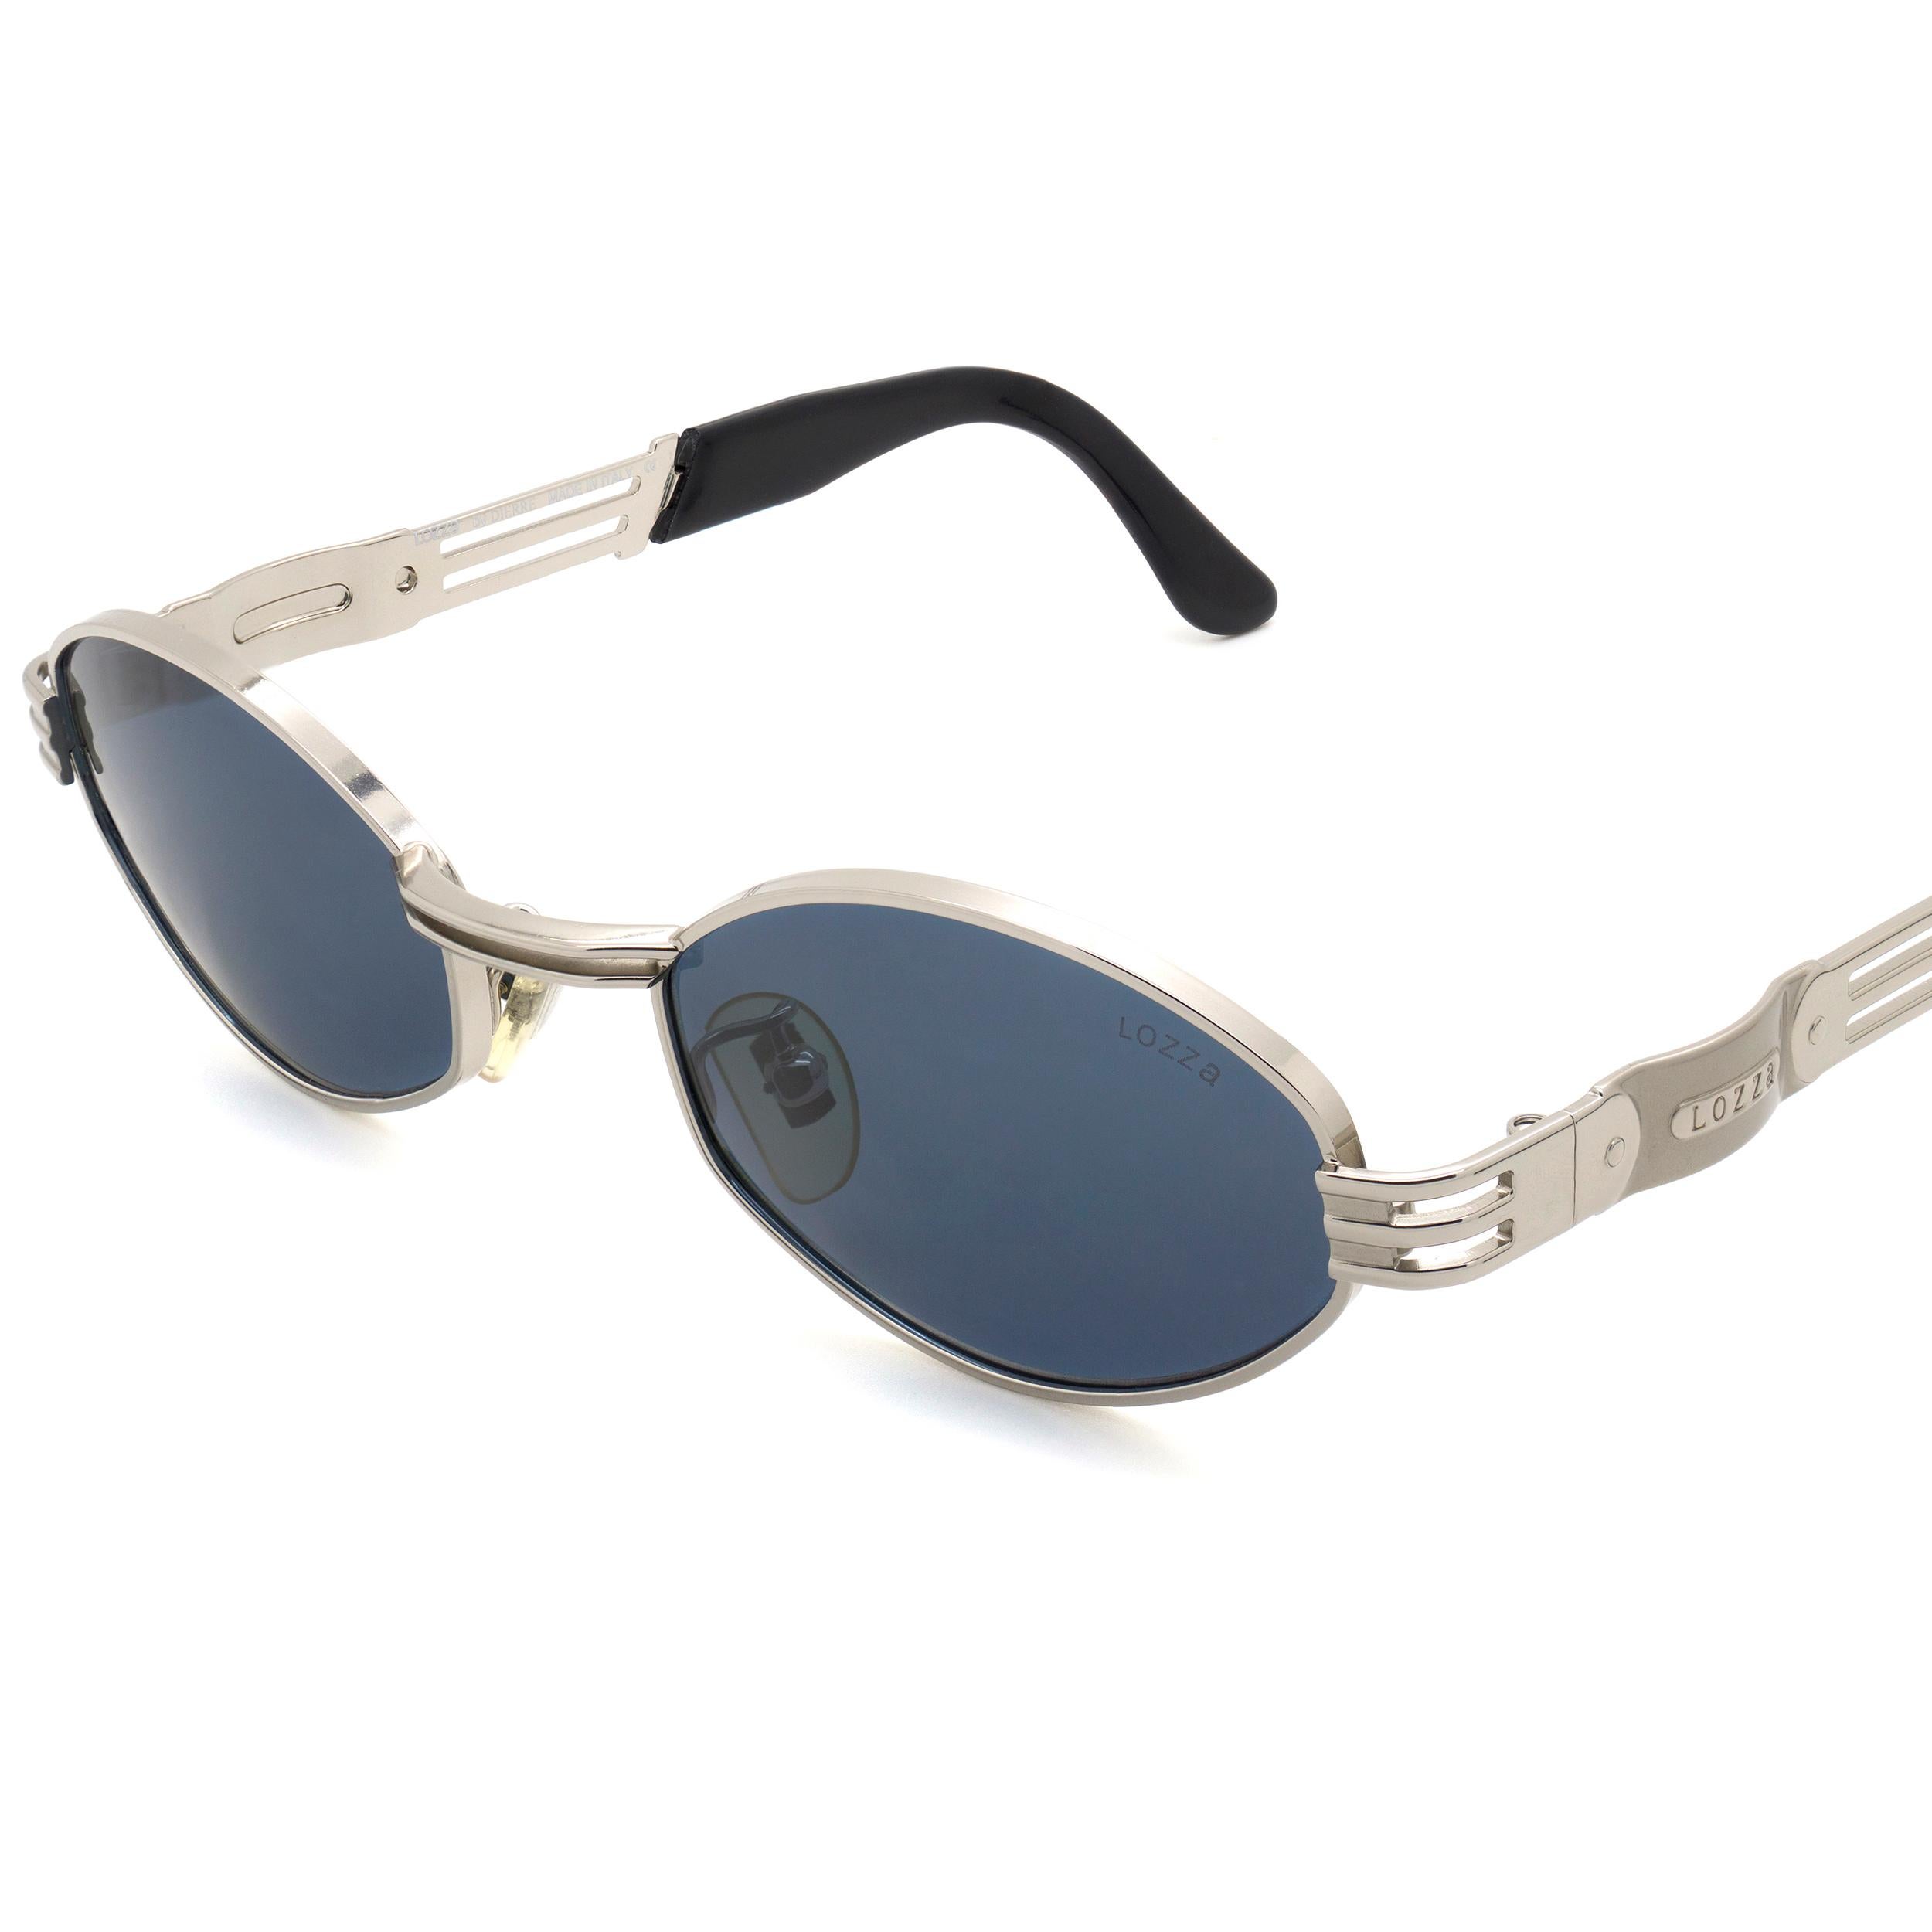 Vintage sunglasses by Lozza, 80s hexagonal sunglasses In New Condition For Sale In Santa Clarita, CA